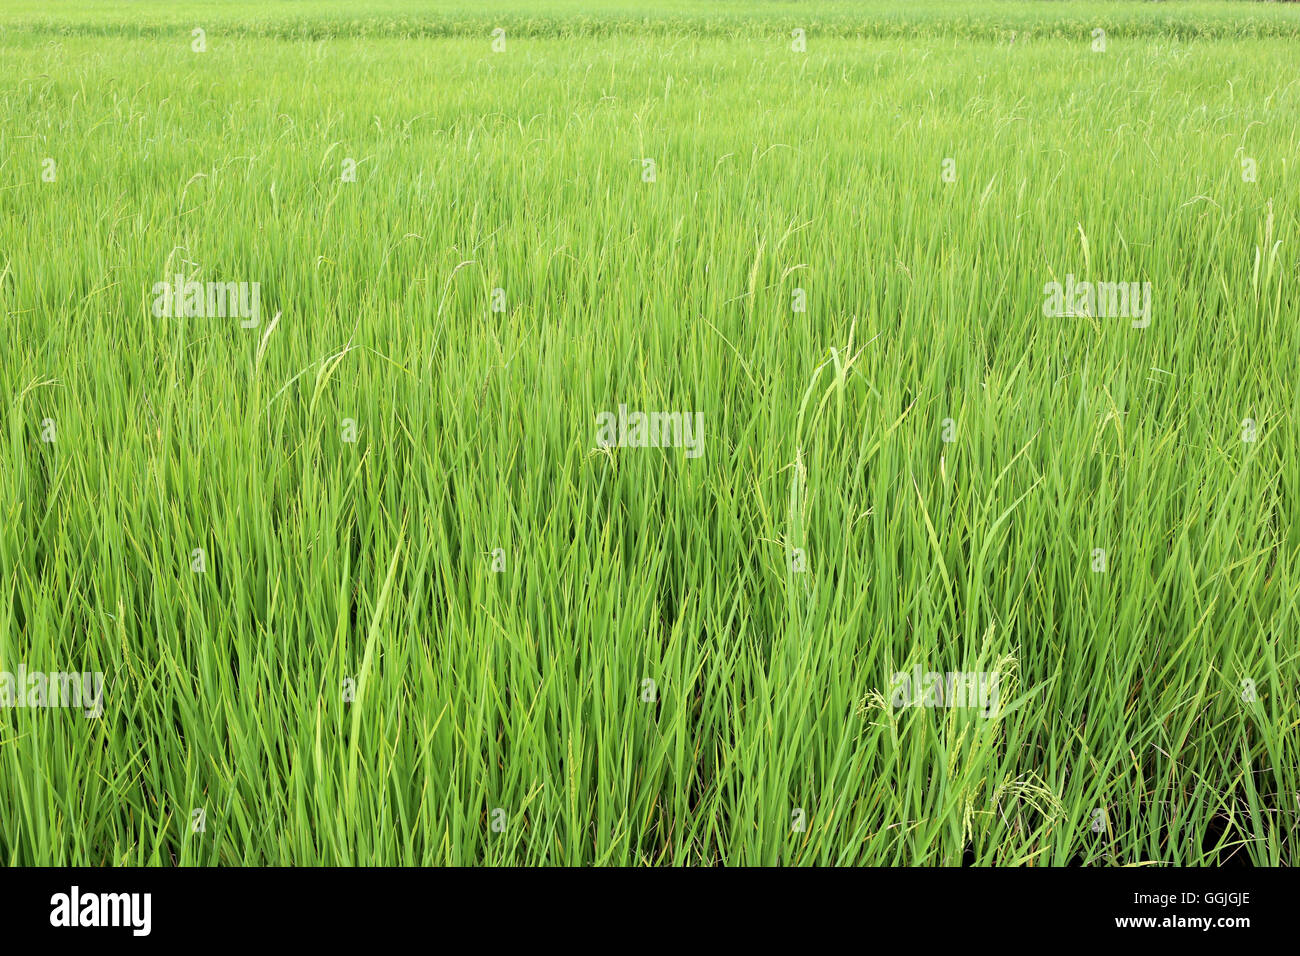 Campos de arrozales verdes brillantes en las zonas rurales de Tailandia y la agricultura de la población local. Foto de stock